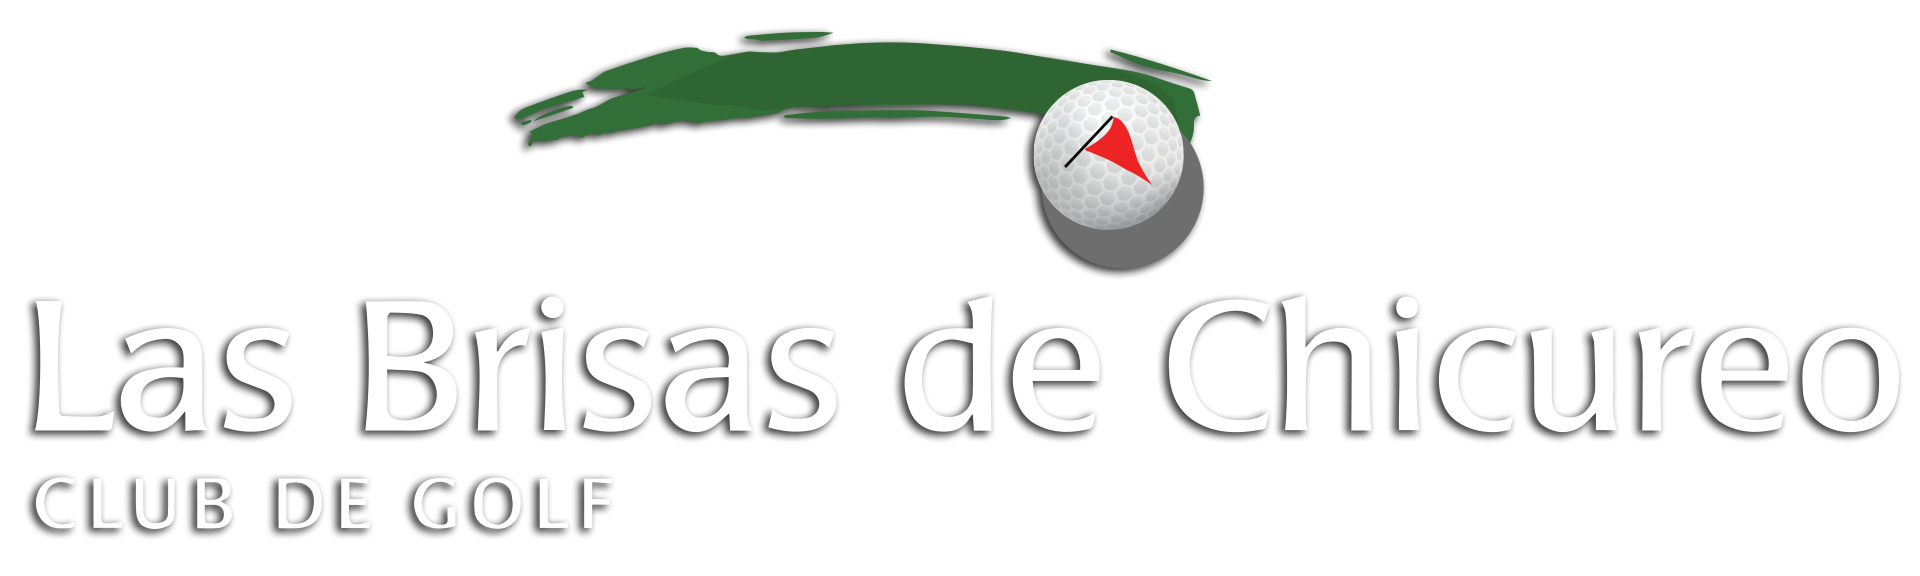 Club de Golf Las Brisas de Chicureo